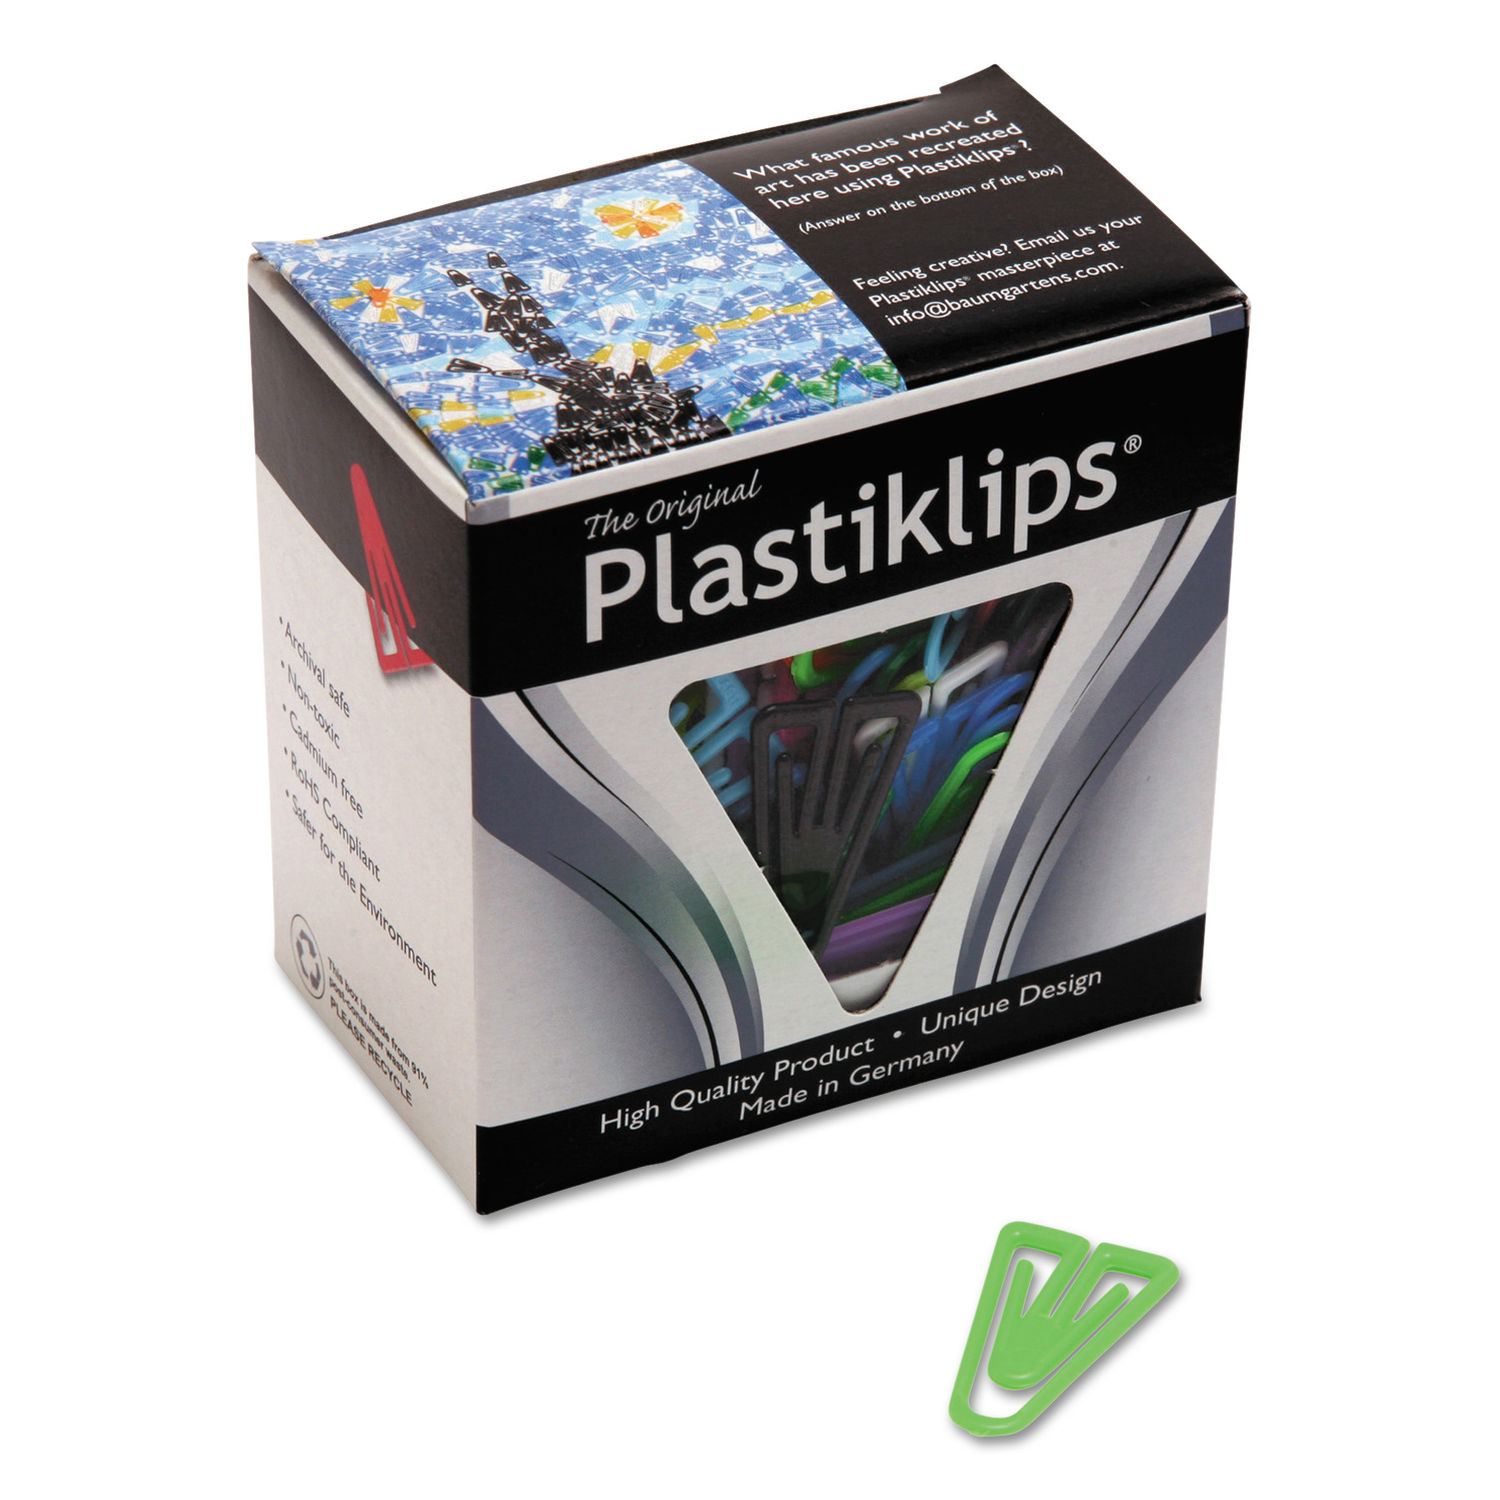 Plastiklips Paper Clips by Baumgartensandreg; BAULP0600